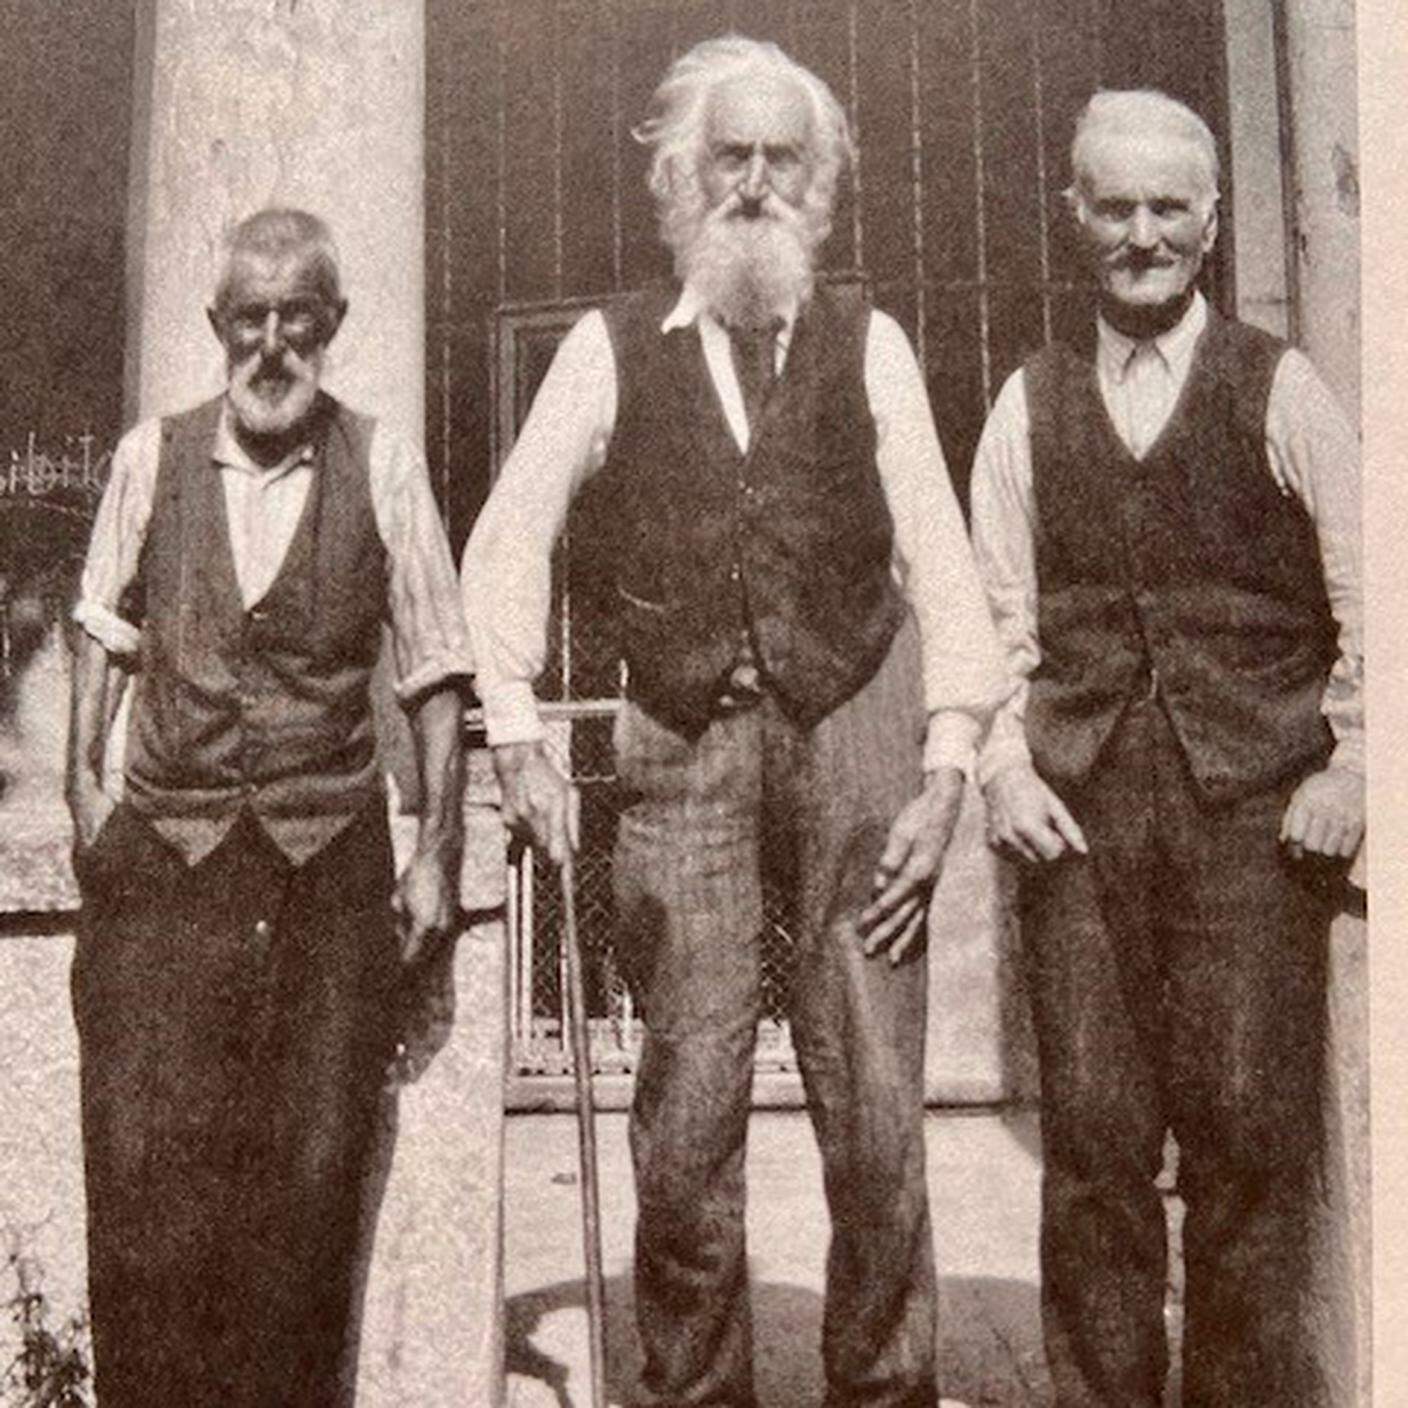 La vita quotidiana dell’800 nel diario di un contadino - Tre cugini davanti alla cappella della Bolla a Breno negli anni Venti del 900, Archivio delle scuole comunali di Lugano